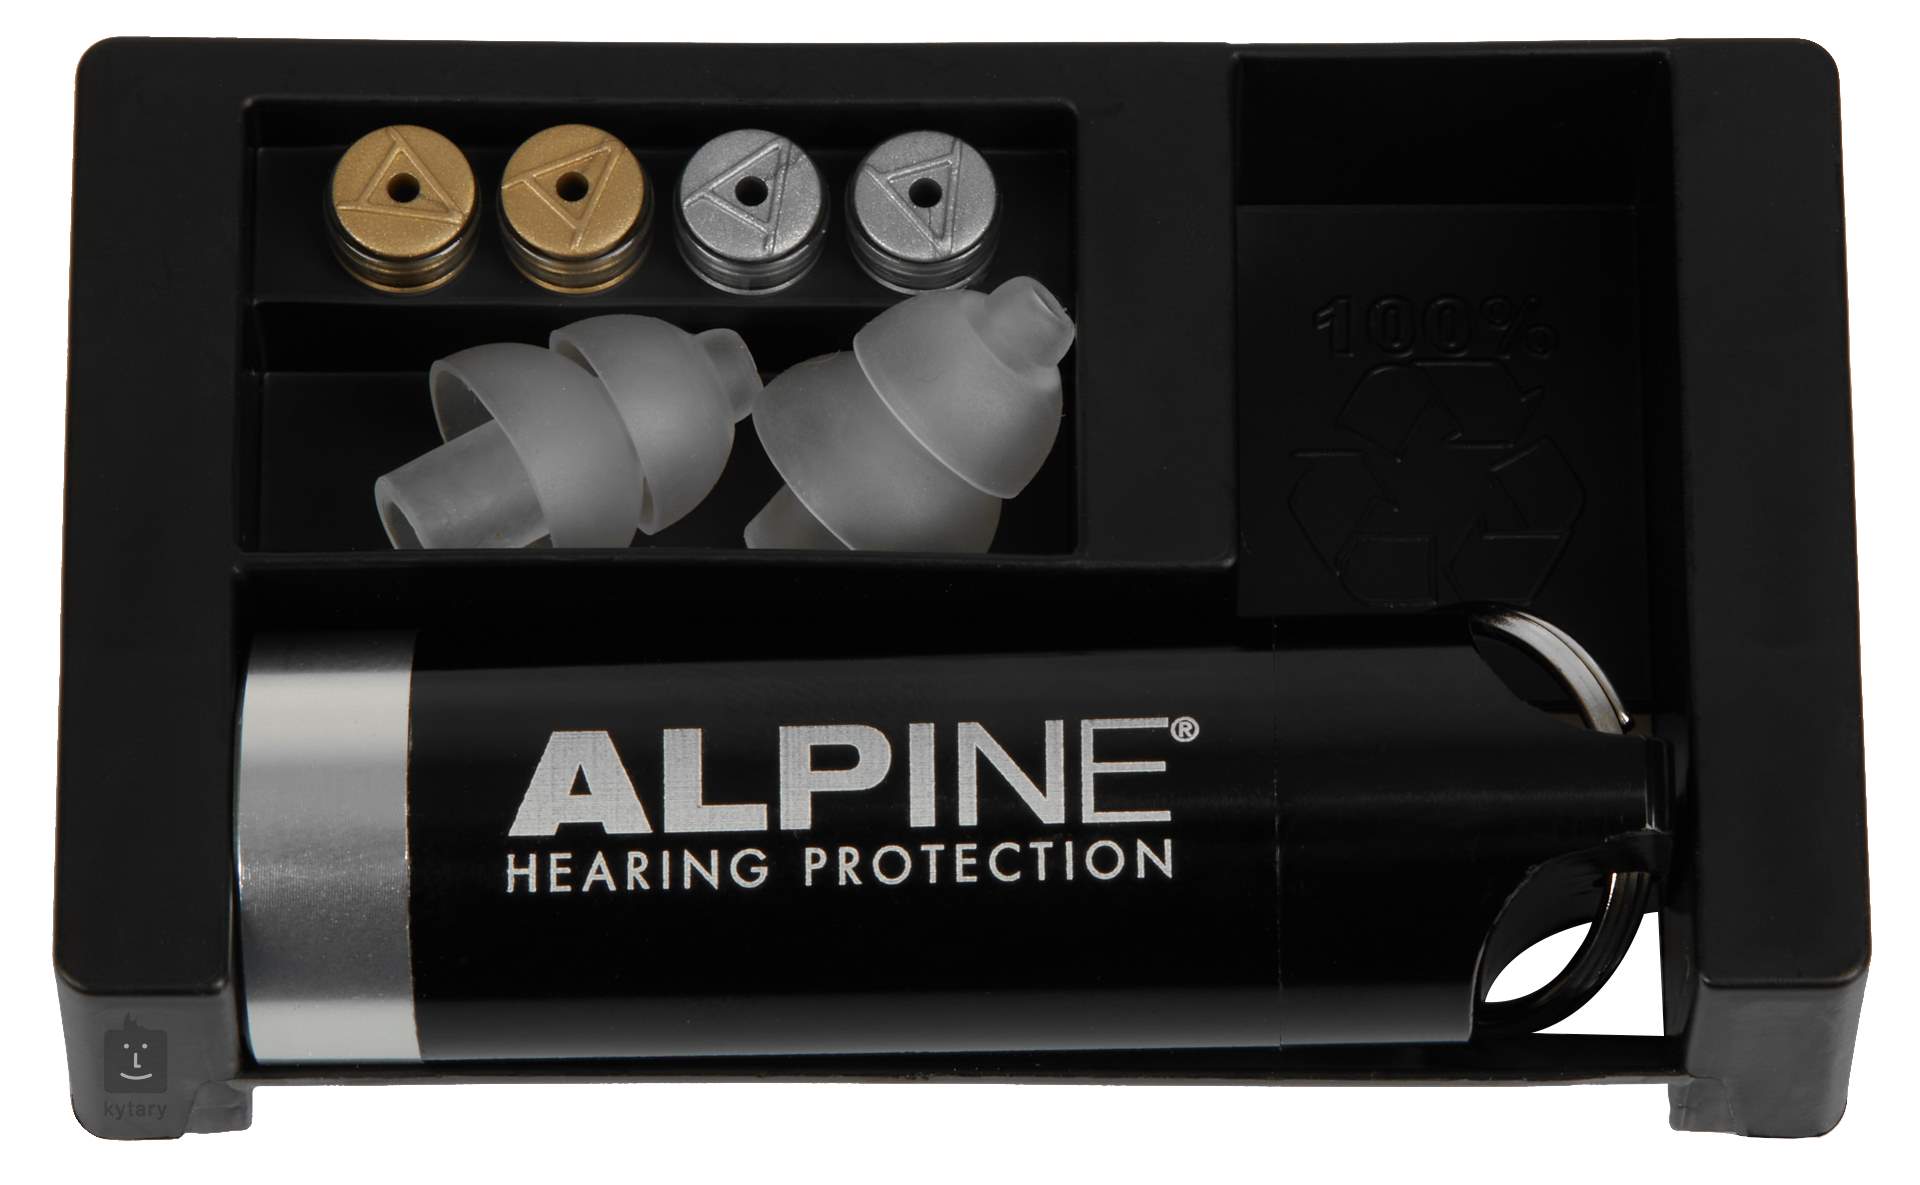 Alpine MusicSafe Pro, Bouchons d'oreille